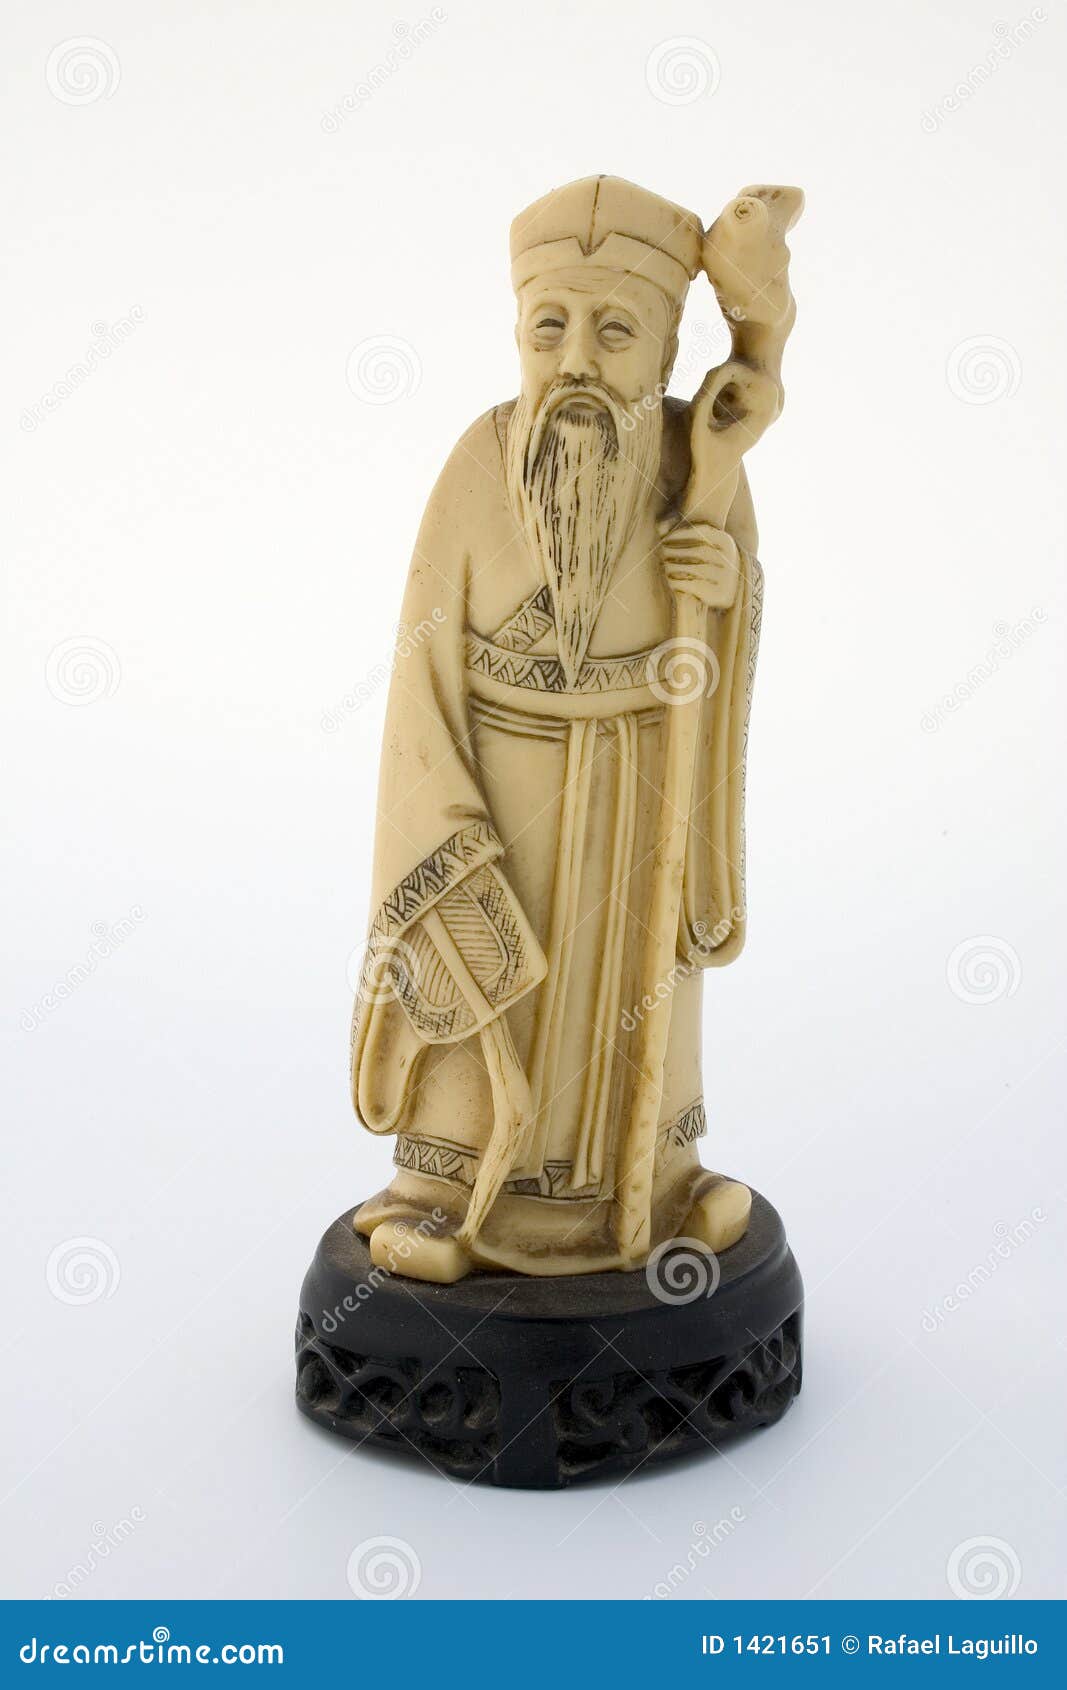 oriental ivory statuette